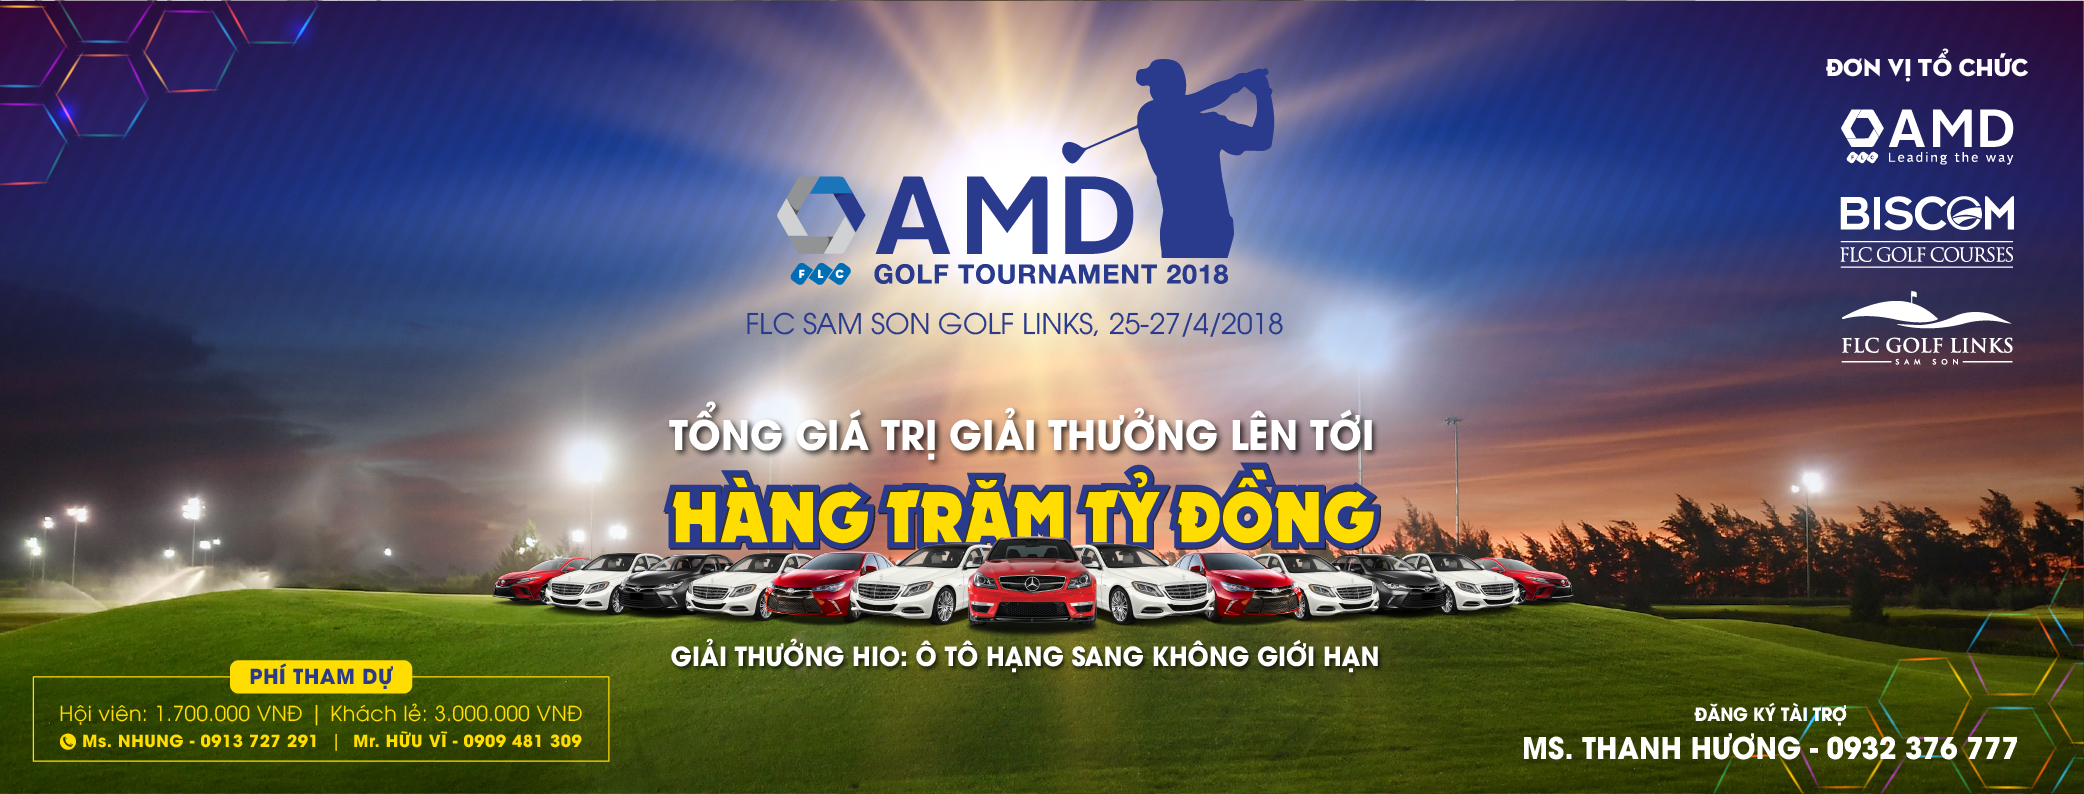 FLC AMD Golf Tournament 2018 'hút' gần 1.000 golfers tham dự dù một tháng nữa mới khởi tranh